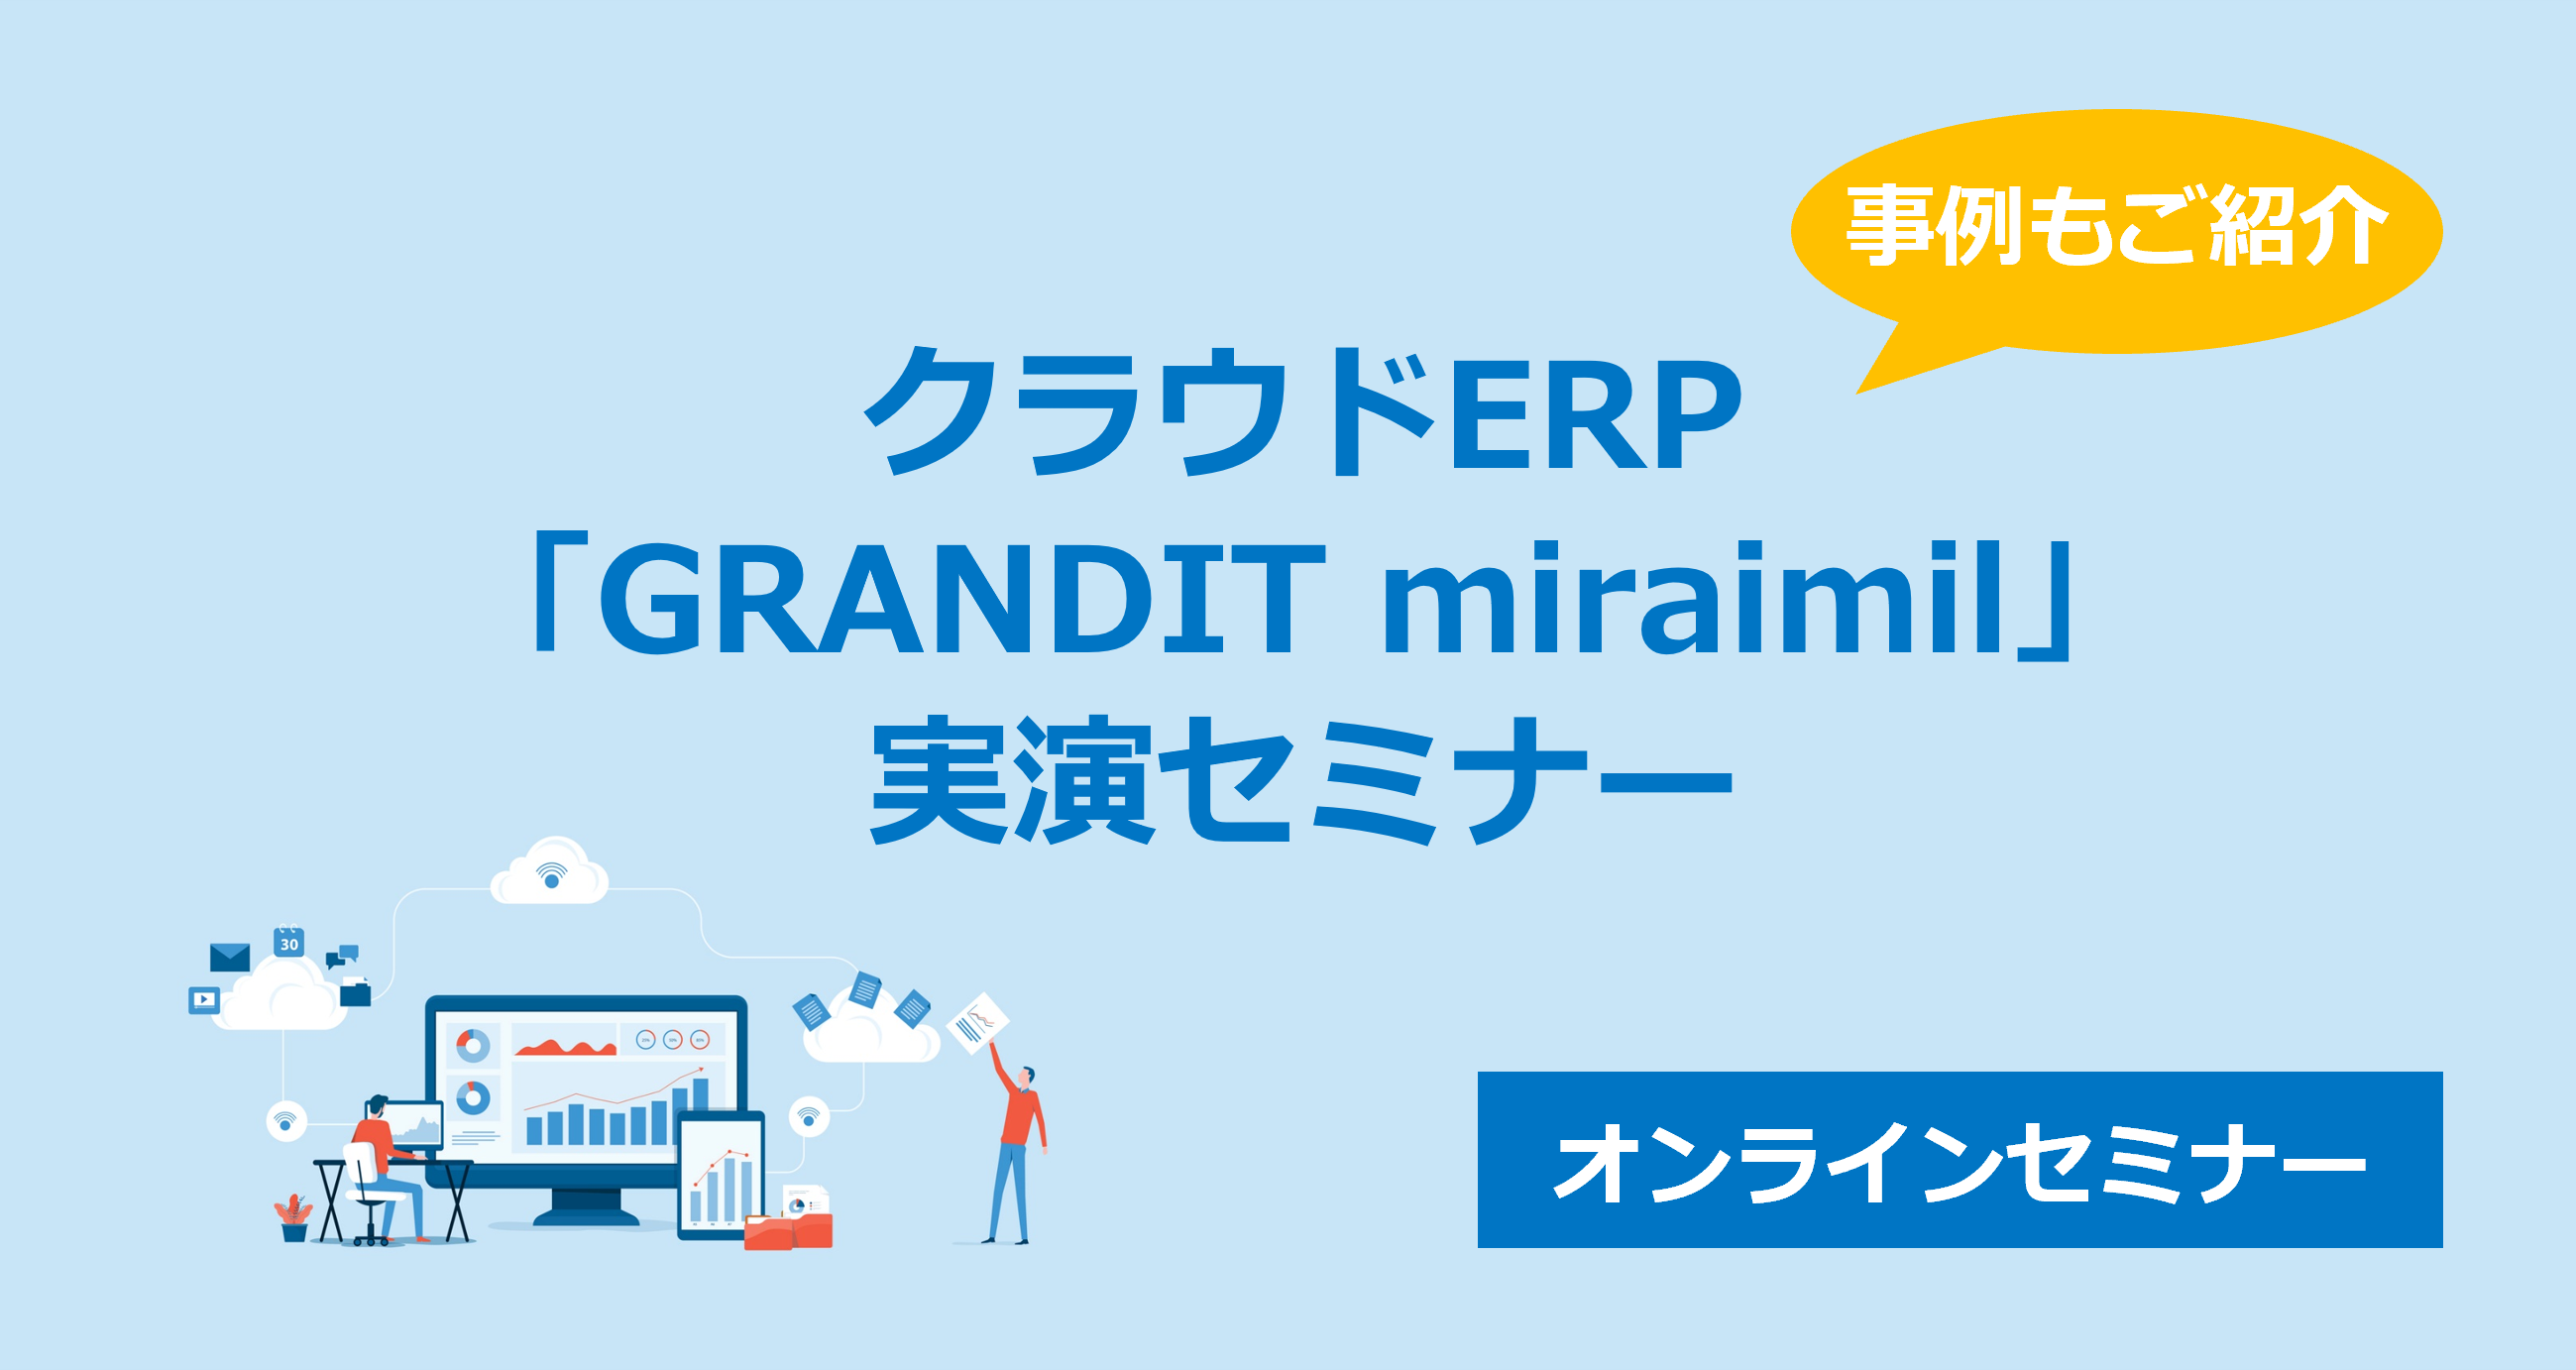 2/27(火)クラウドERP「GRANDIT miraimil」実演セミナー